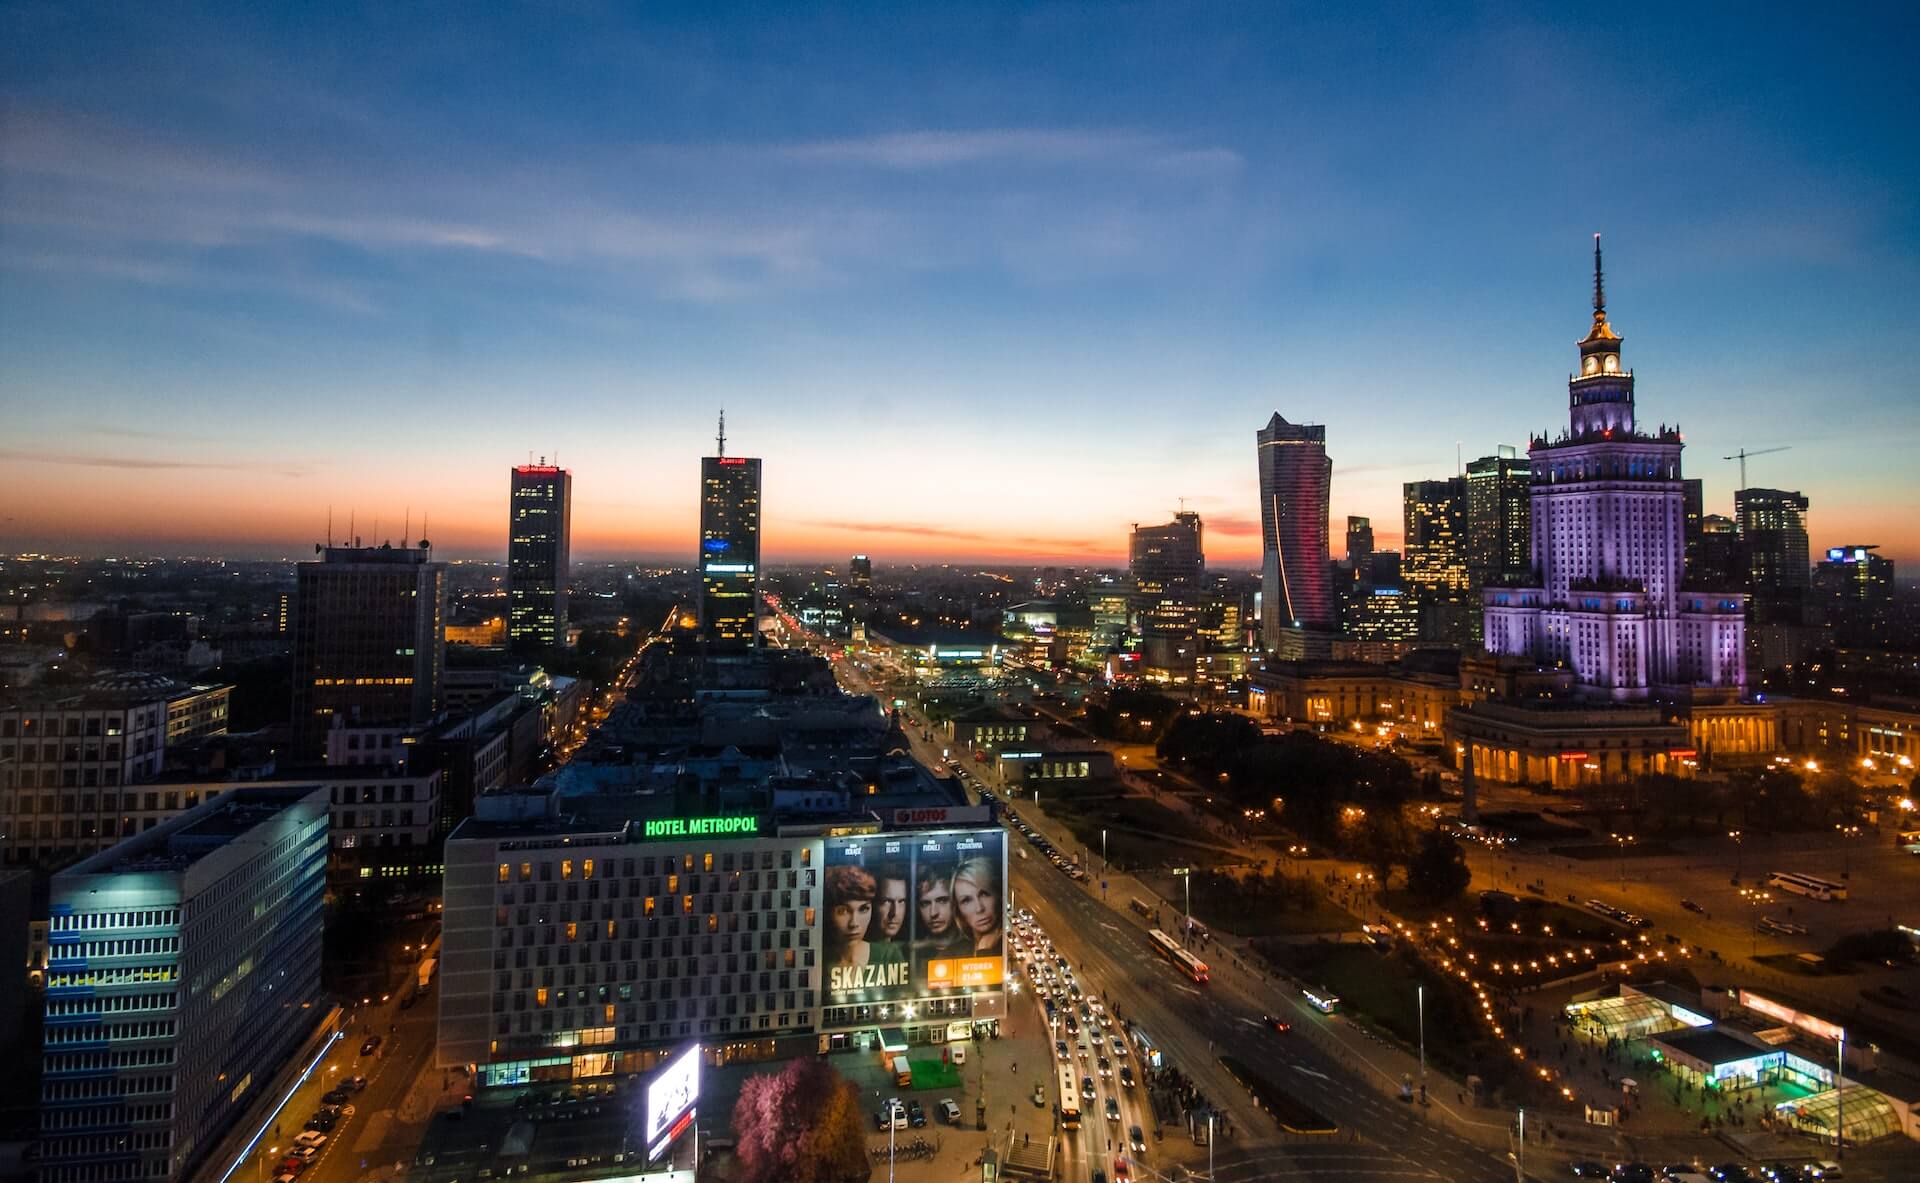 Warsaw at Sunset